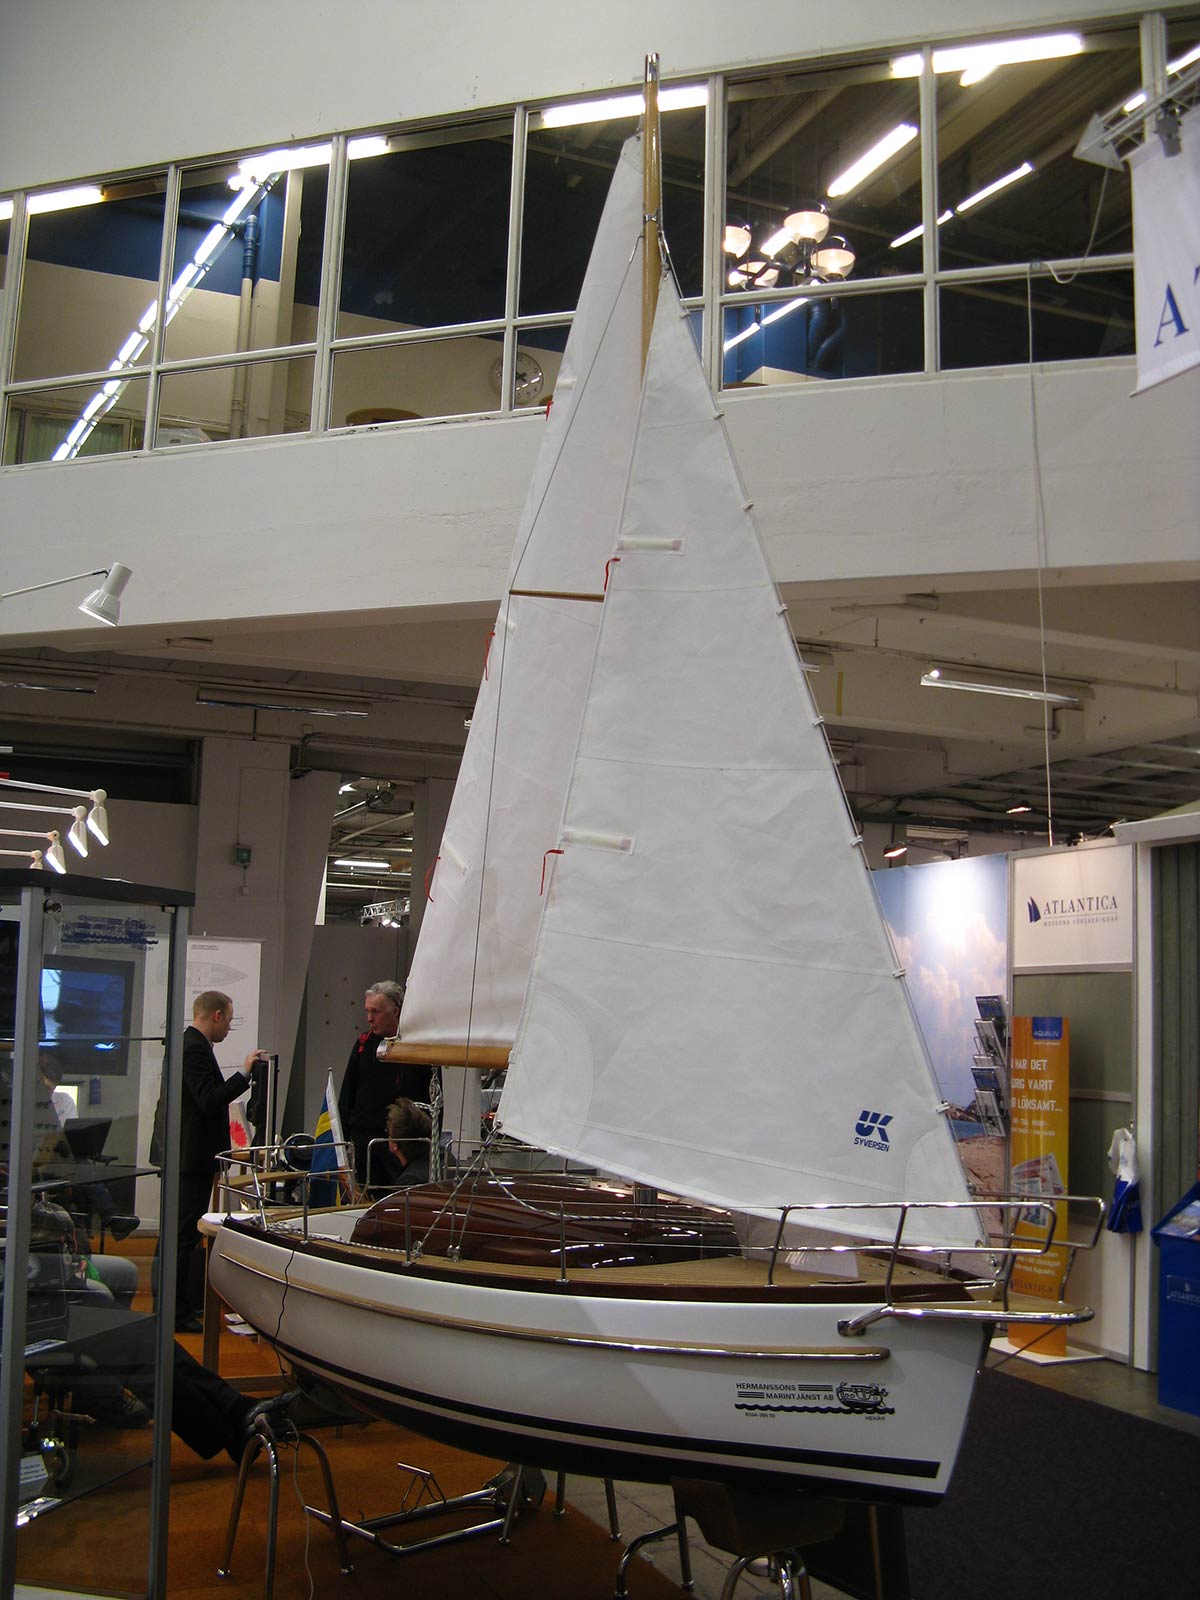 En liten segelbåt som visar vad Hermanssons Marintjänst kan erbjuda